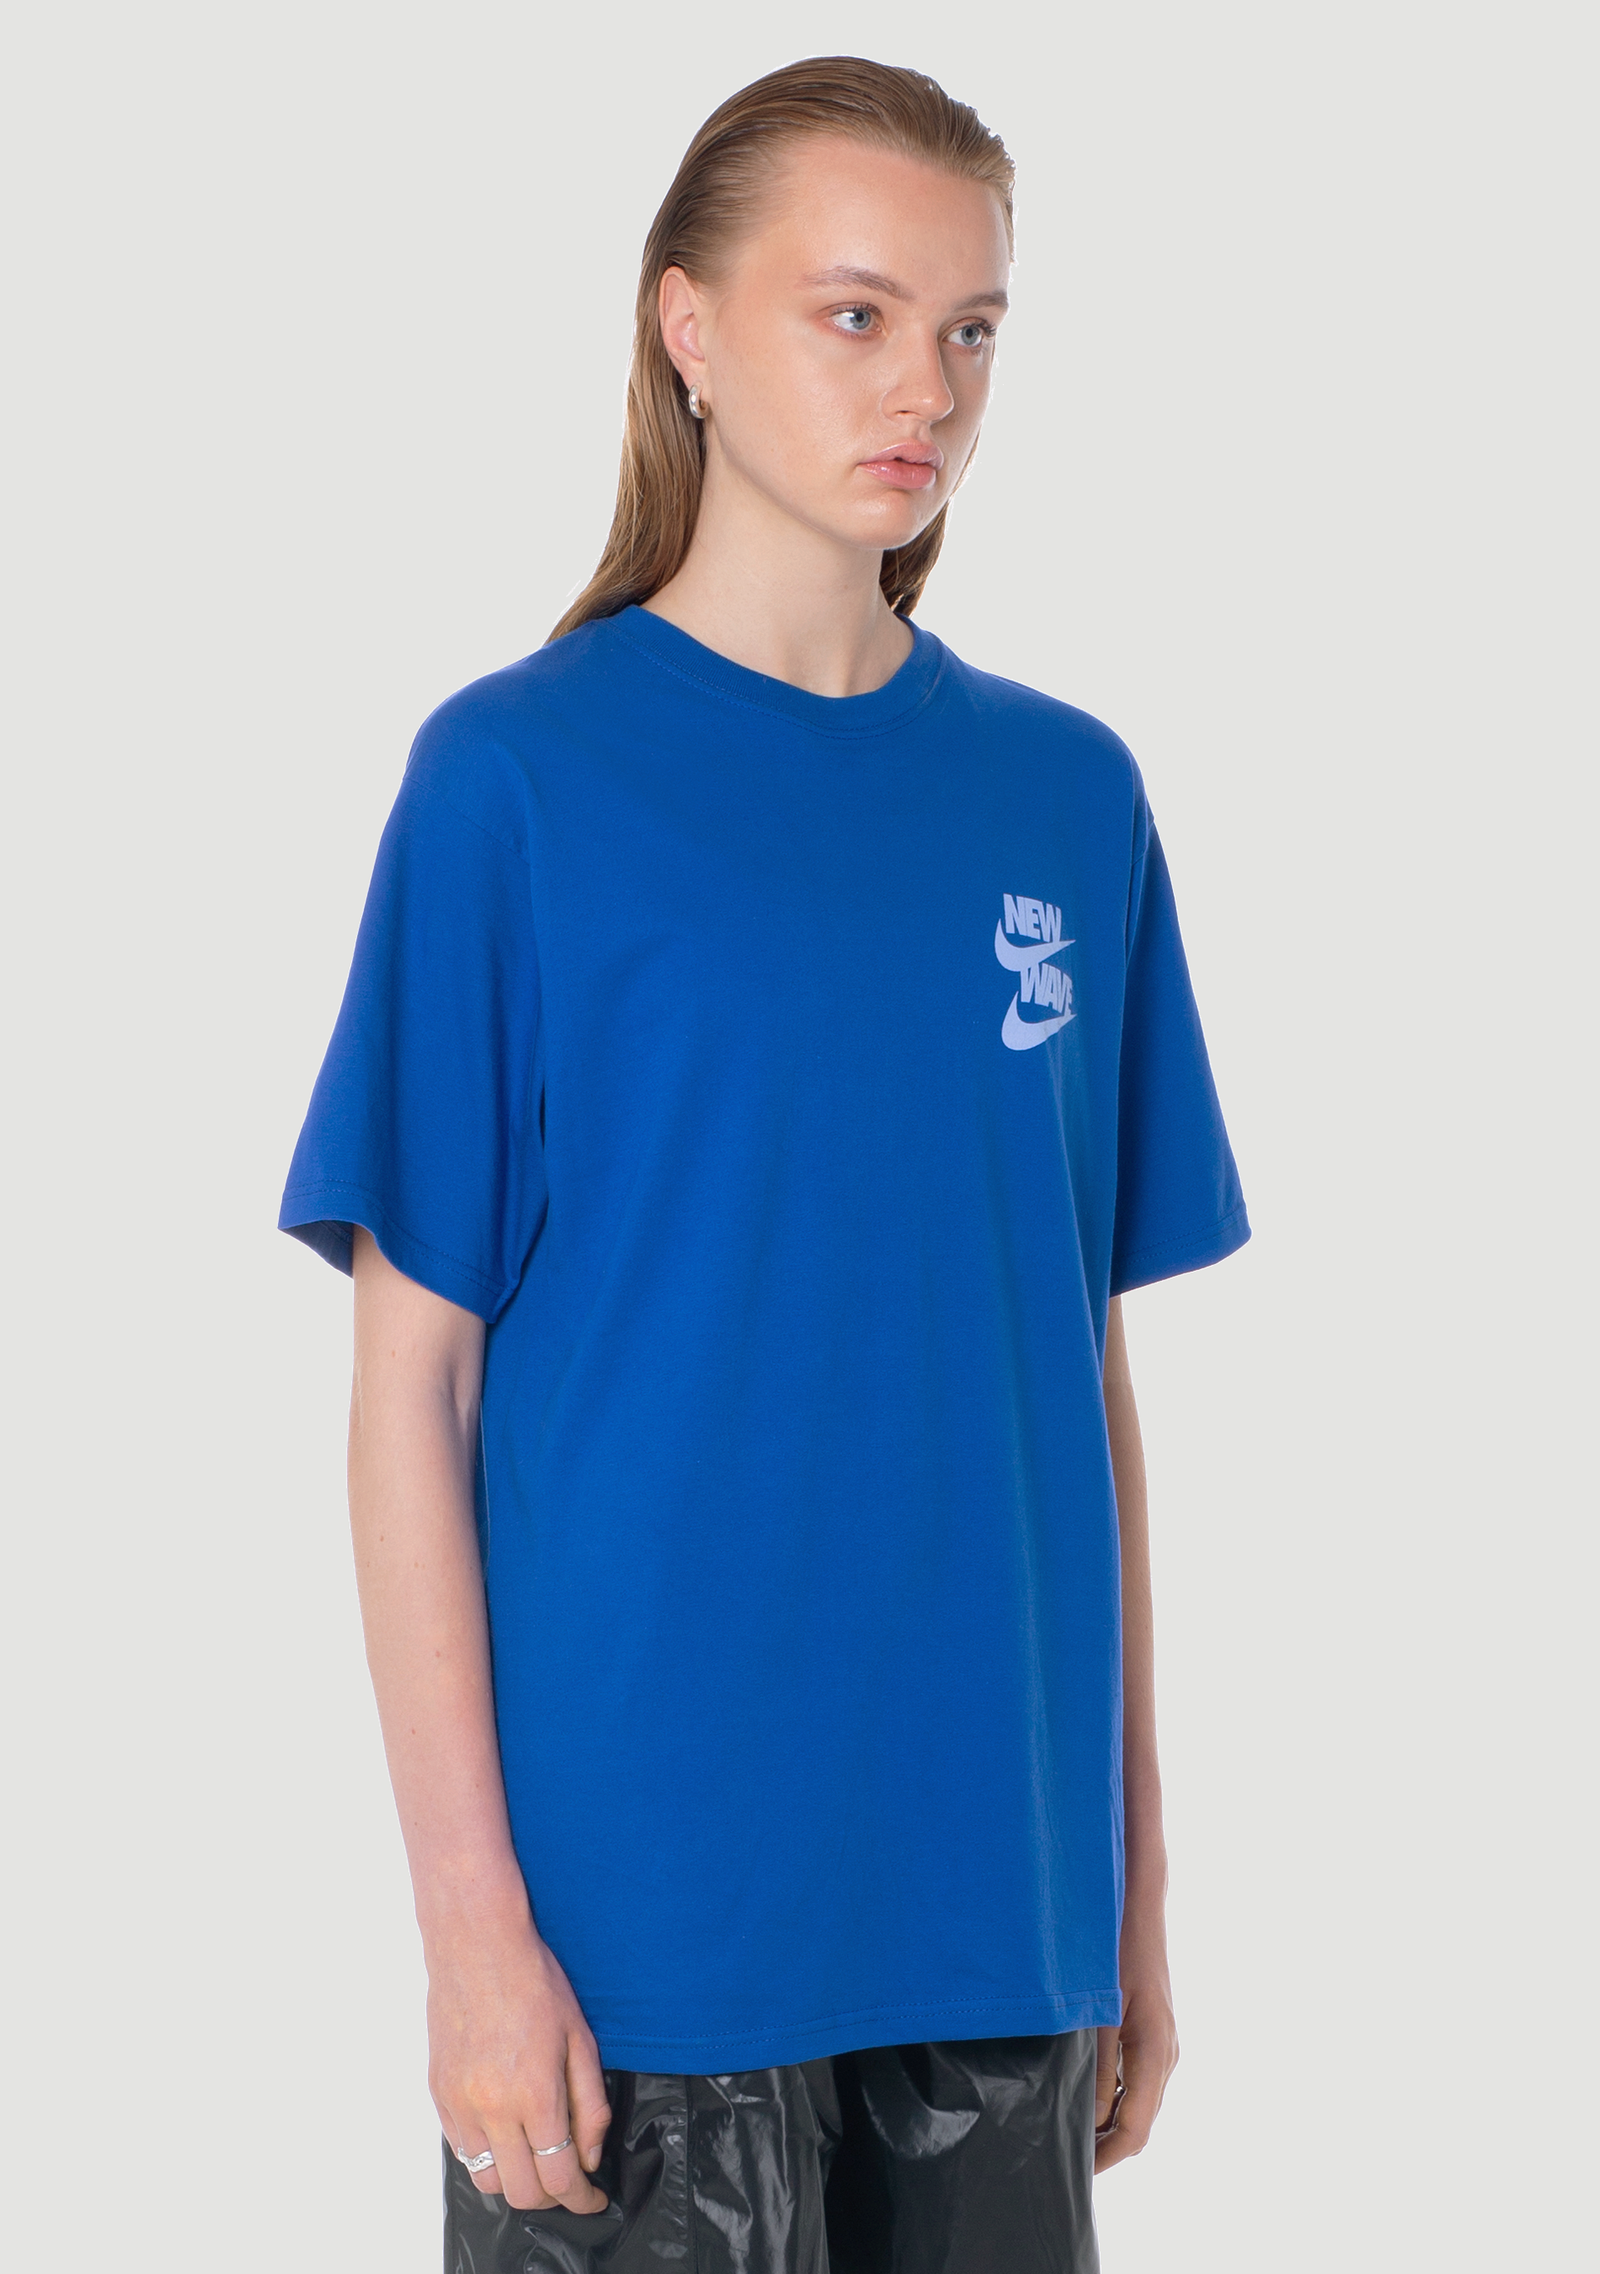 New Wave Ocean Blue T-Shirt